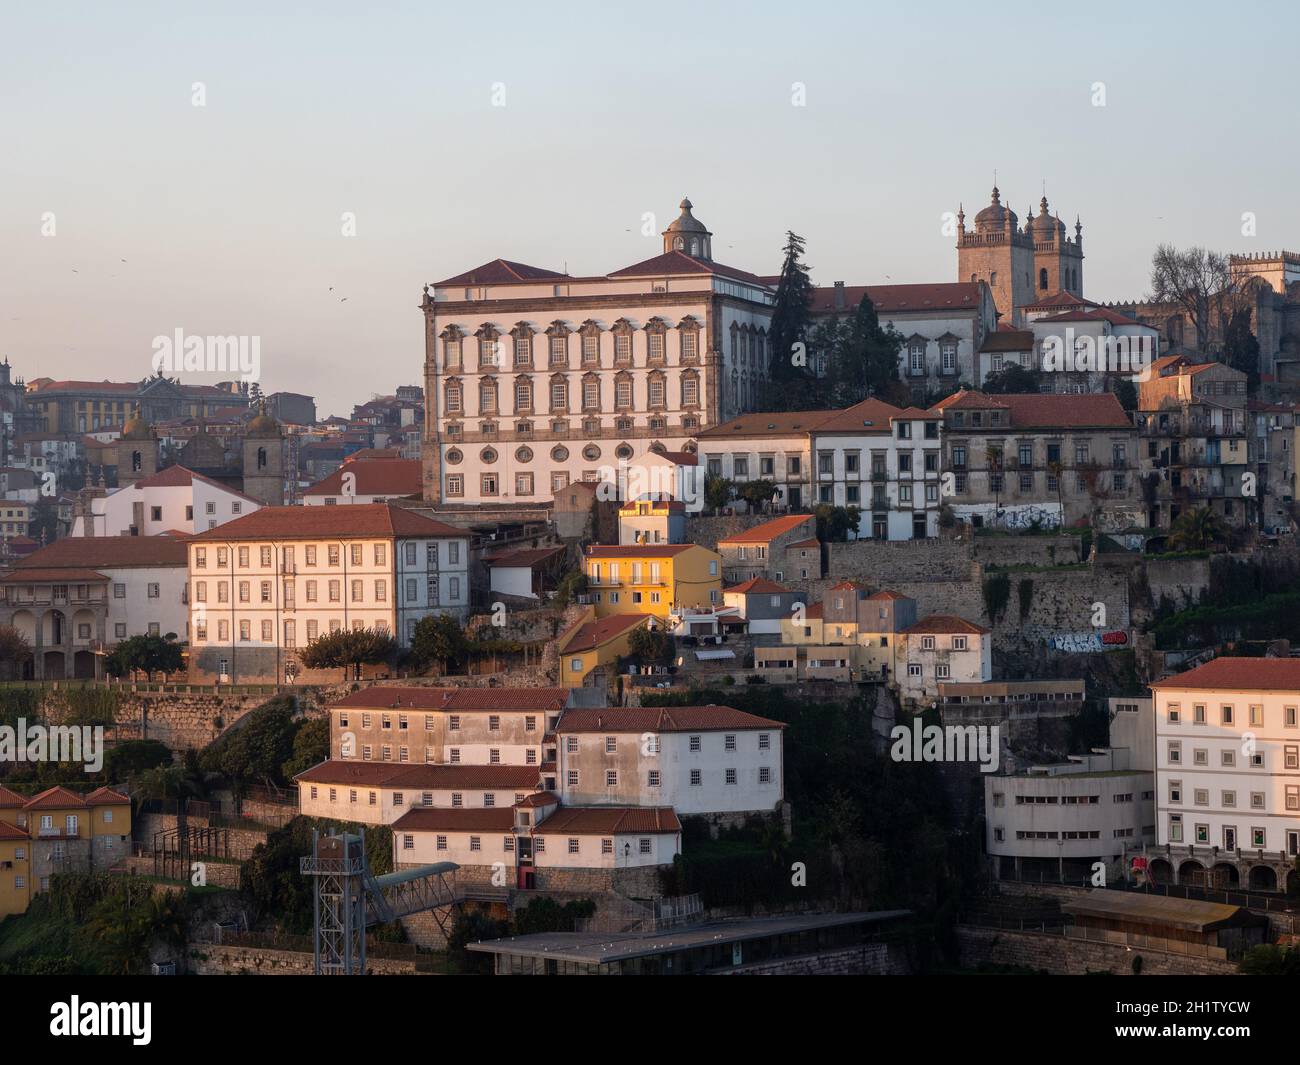 Vista desde Vila Nova da Gaia hasta el centro histórico de Oporto con el Palacio Episcopal y la Catedral da Sé Foto de stock